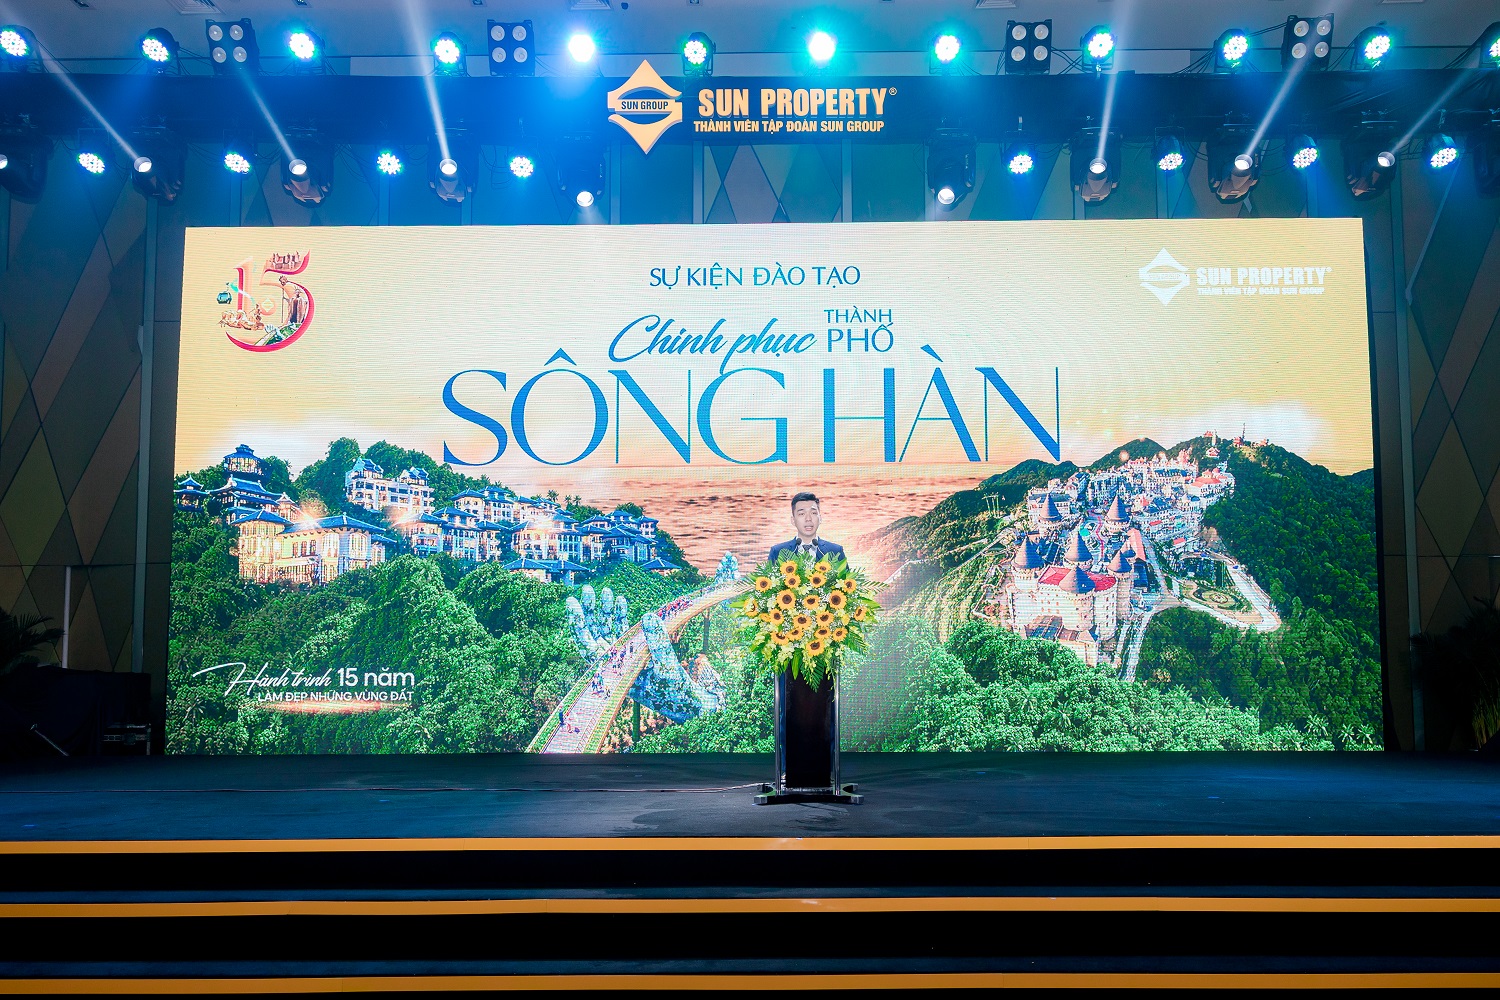 Sun Property truyền cảm hứng tới chiến binh kinh doanh cùng 'Chinh phục thành phố sông Hàn' - Ảnh 1.